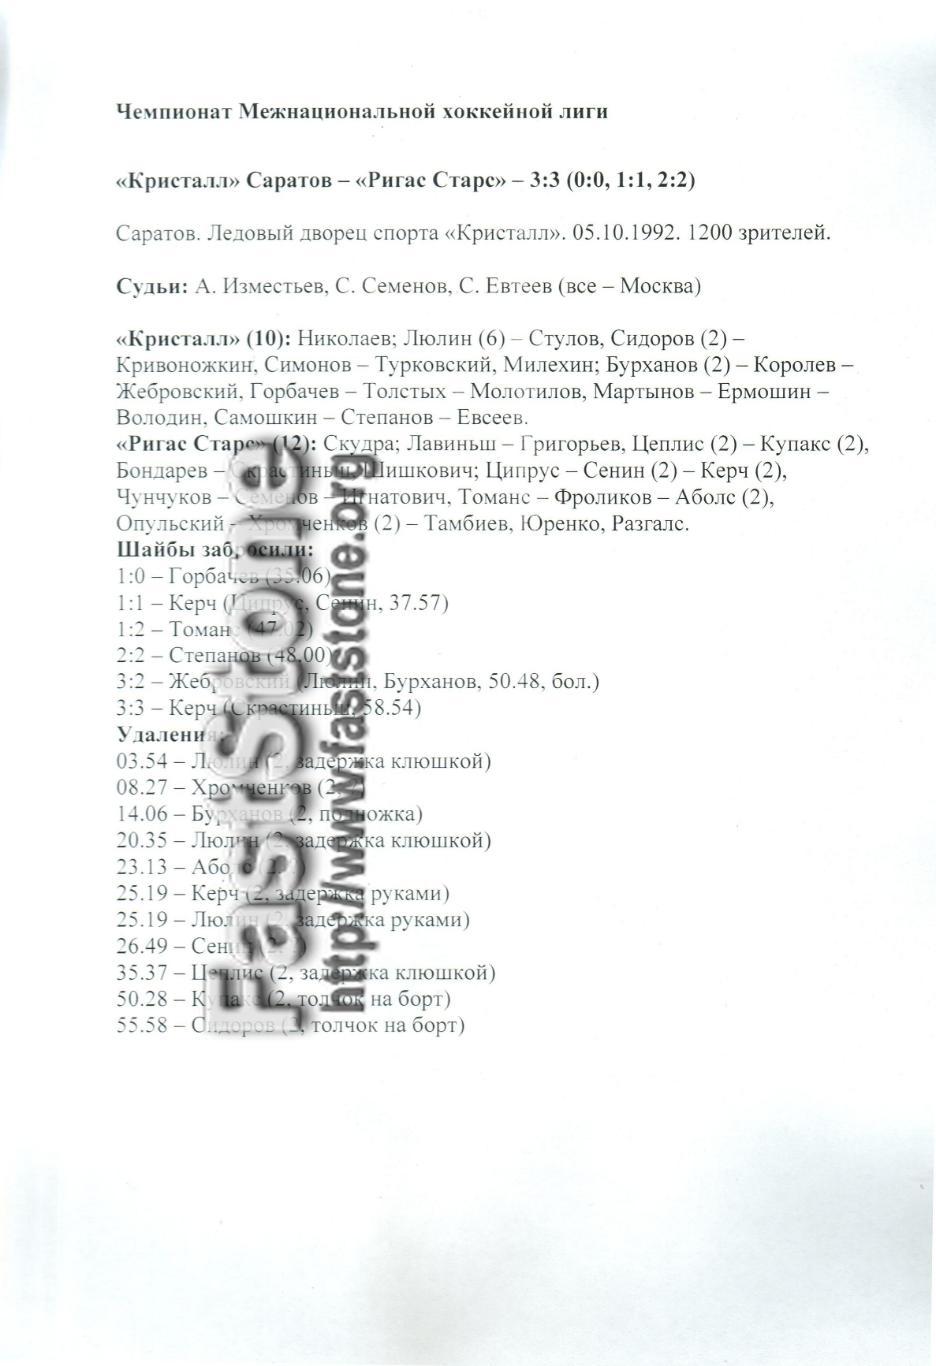 Кристалл Саратов – Ригас Старс 05.10.1992 Статистика матча